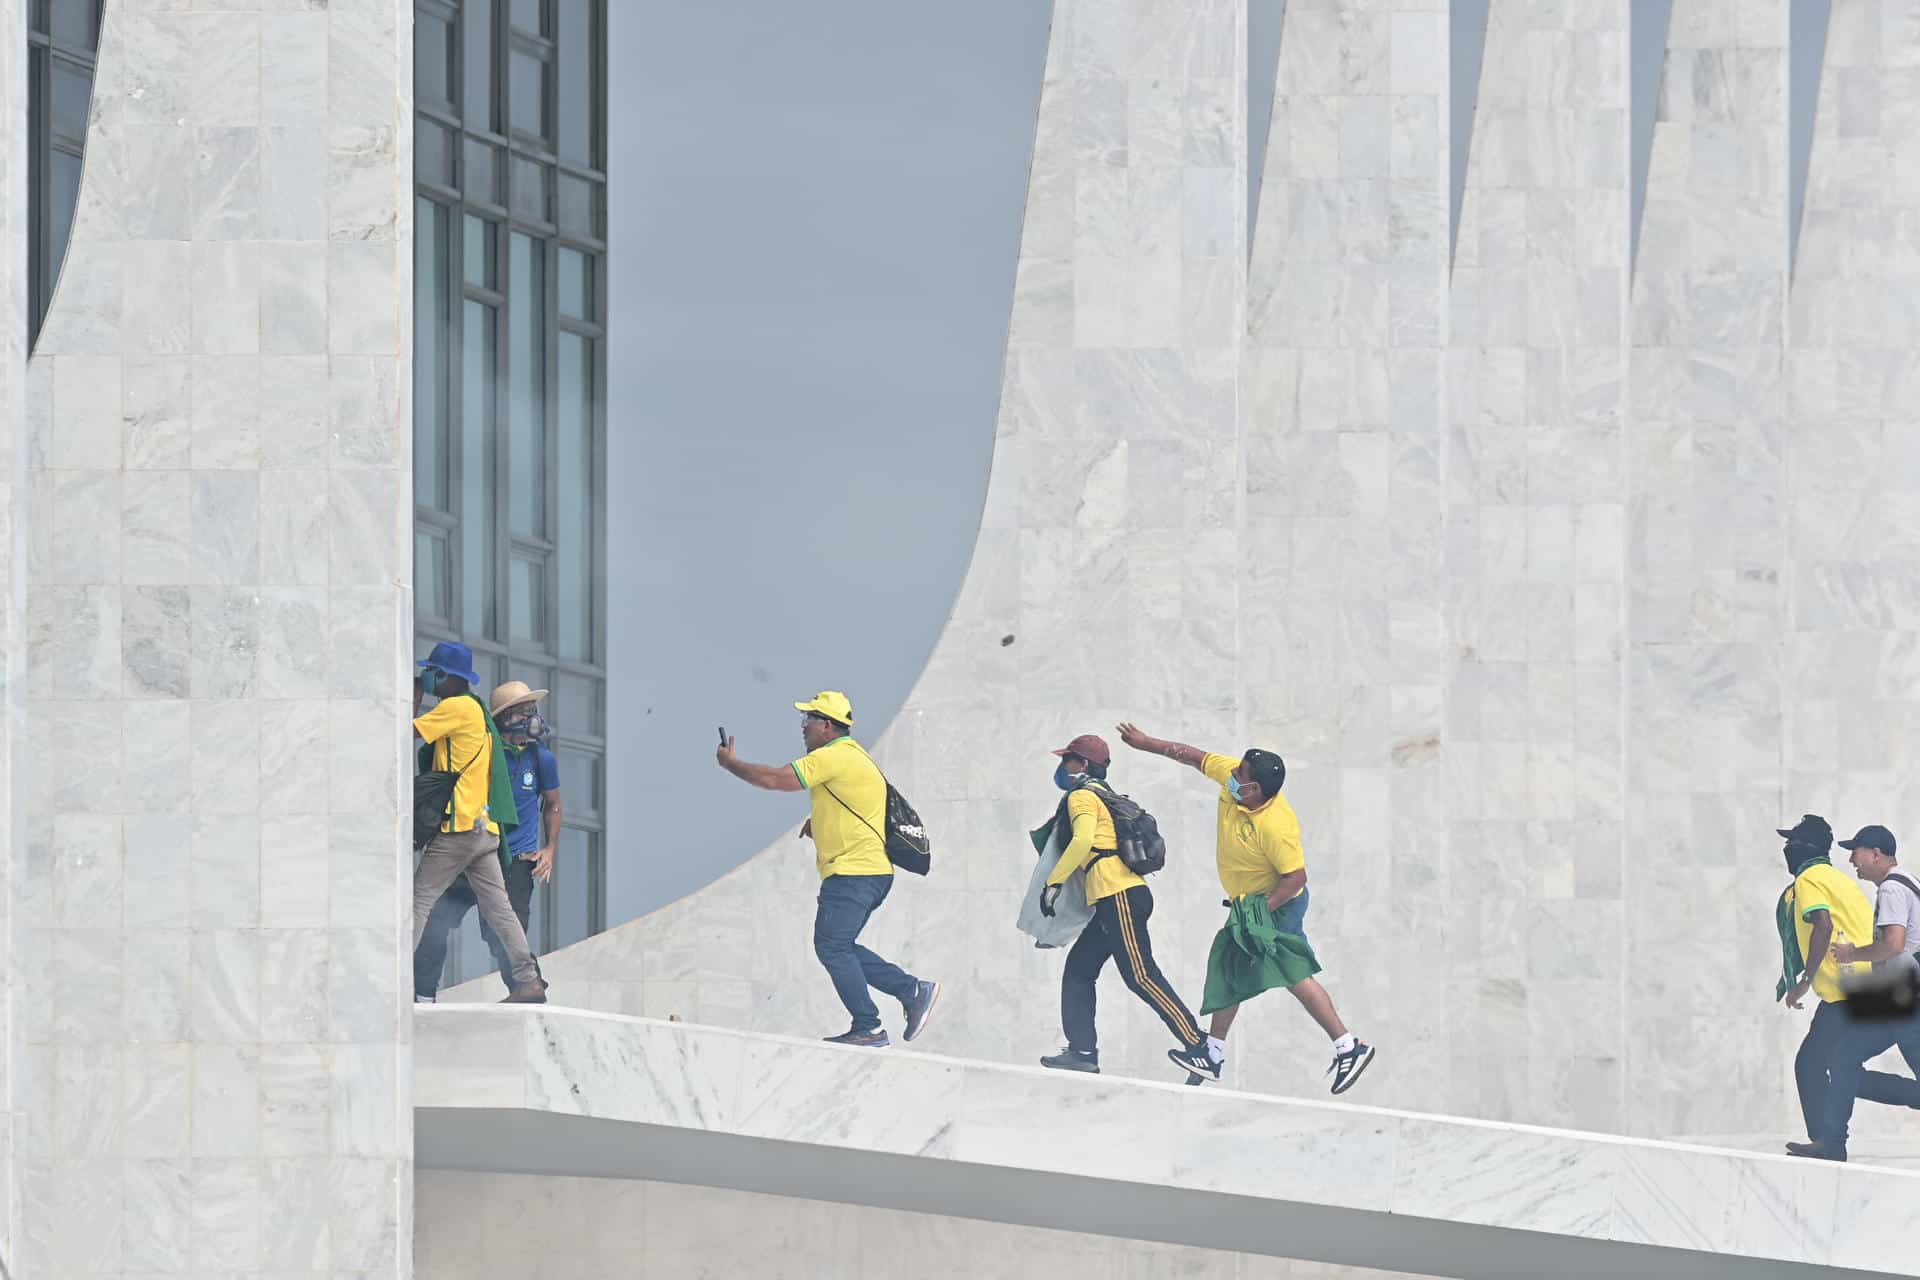 Seguidores del expresidente brasileño Jair Bolsonaro invadieron este domingo el Palacio de Planalto, sede del Ejecutivo, y la Corte Suprema, después de haber irrumpido antes en el Congreso Nacional en actos golpistas contra el presidente Luiz Inácio Lula da Silva, en Brasilia (Brasil).